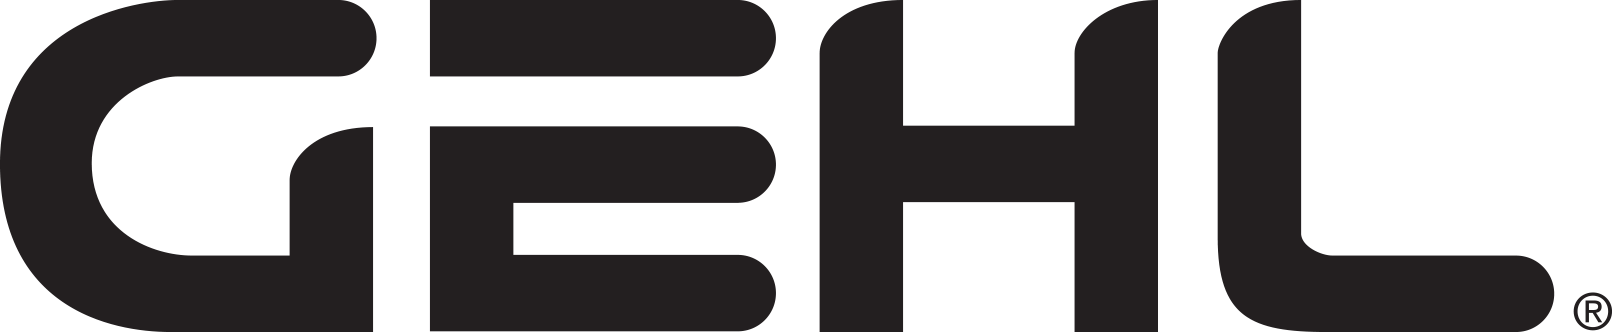 gehl logo in black color